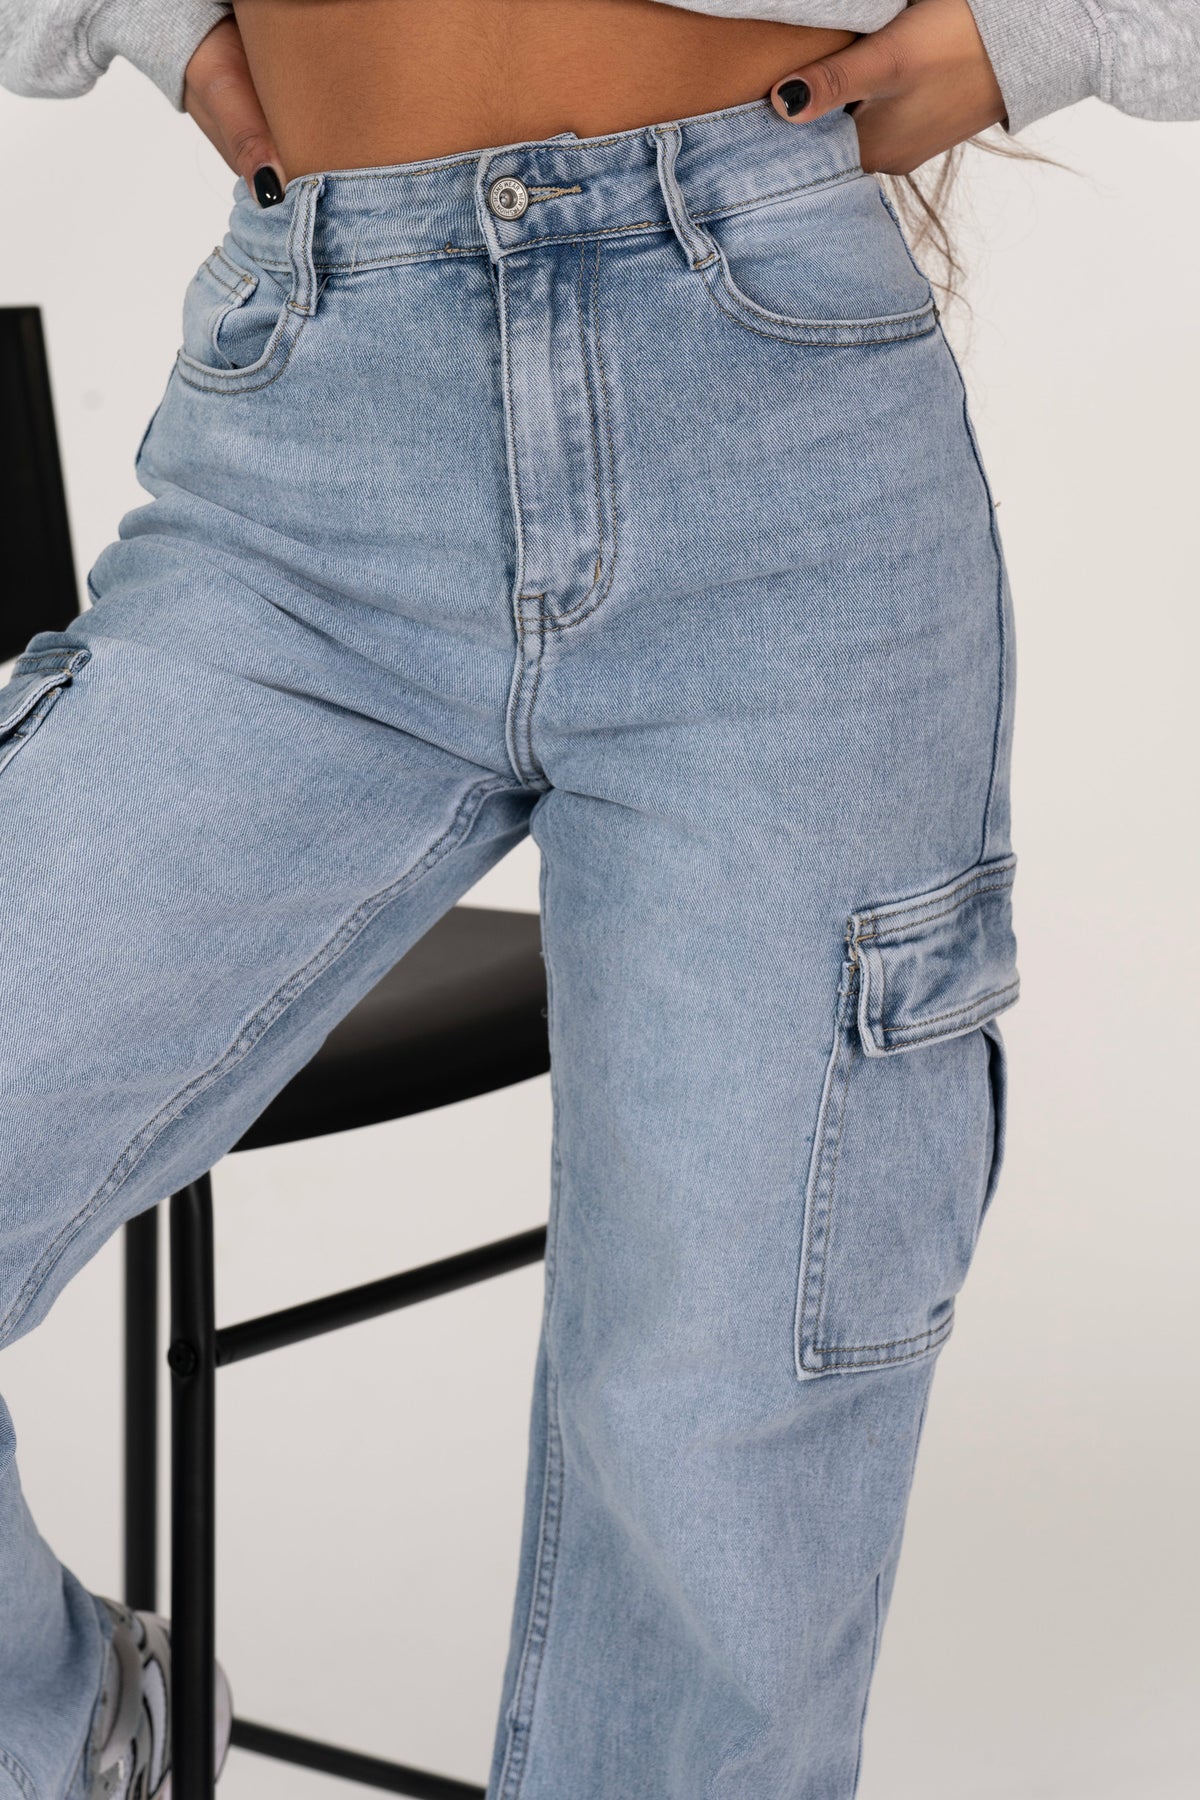 Denim cargo pants | cargo pants | cargo broeken | jeans cargo pants 